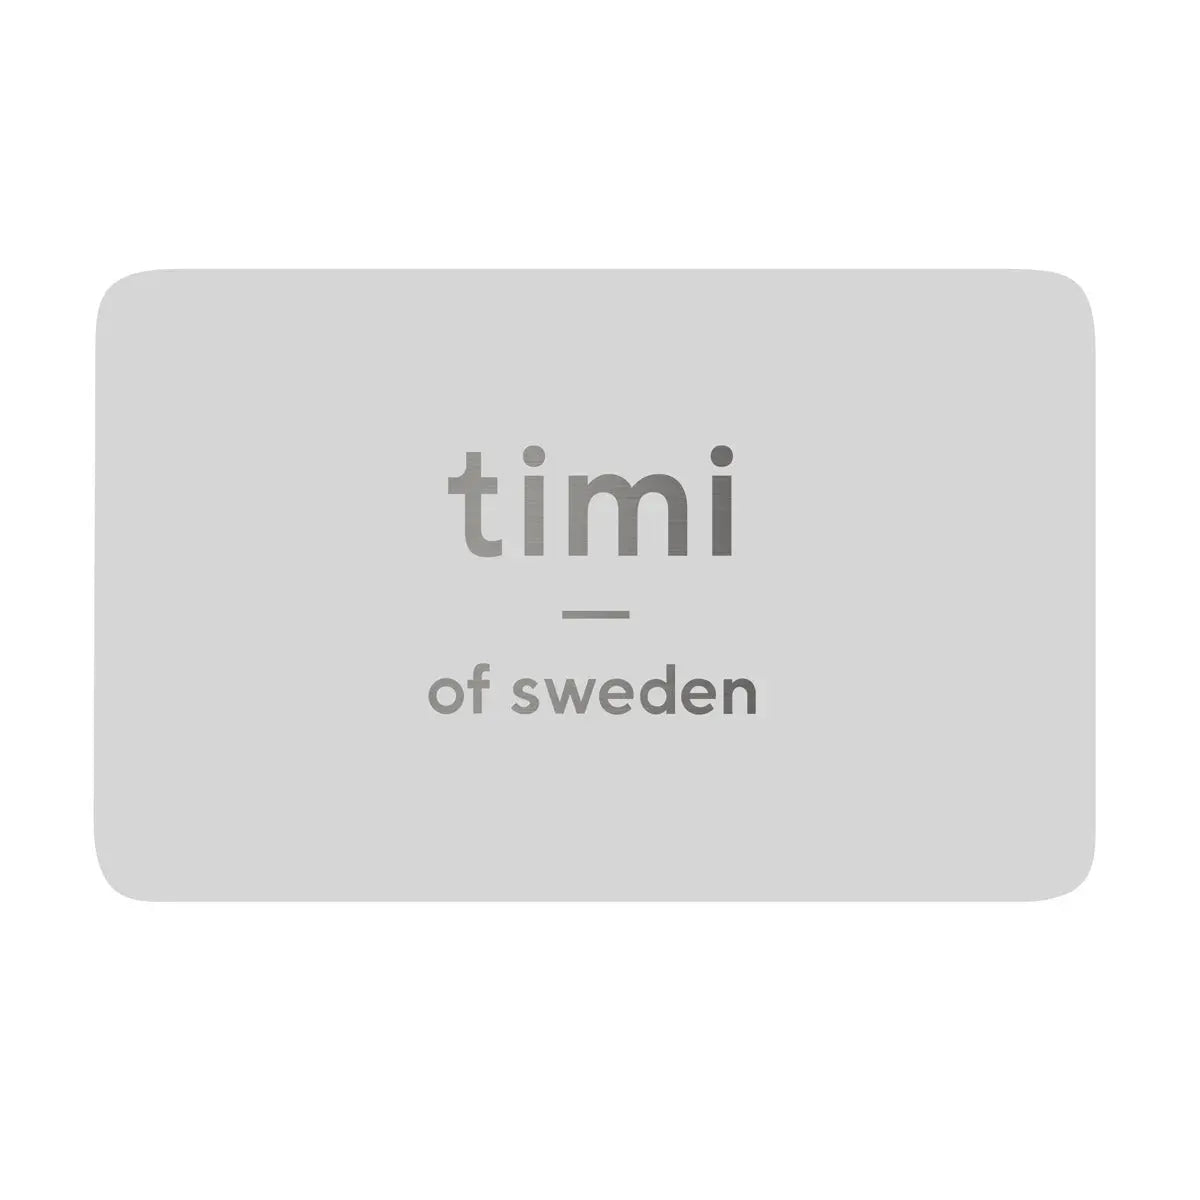 timi of Sweden gavekort